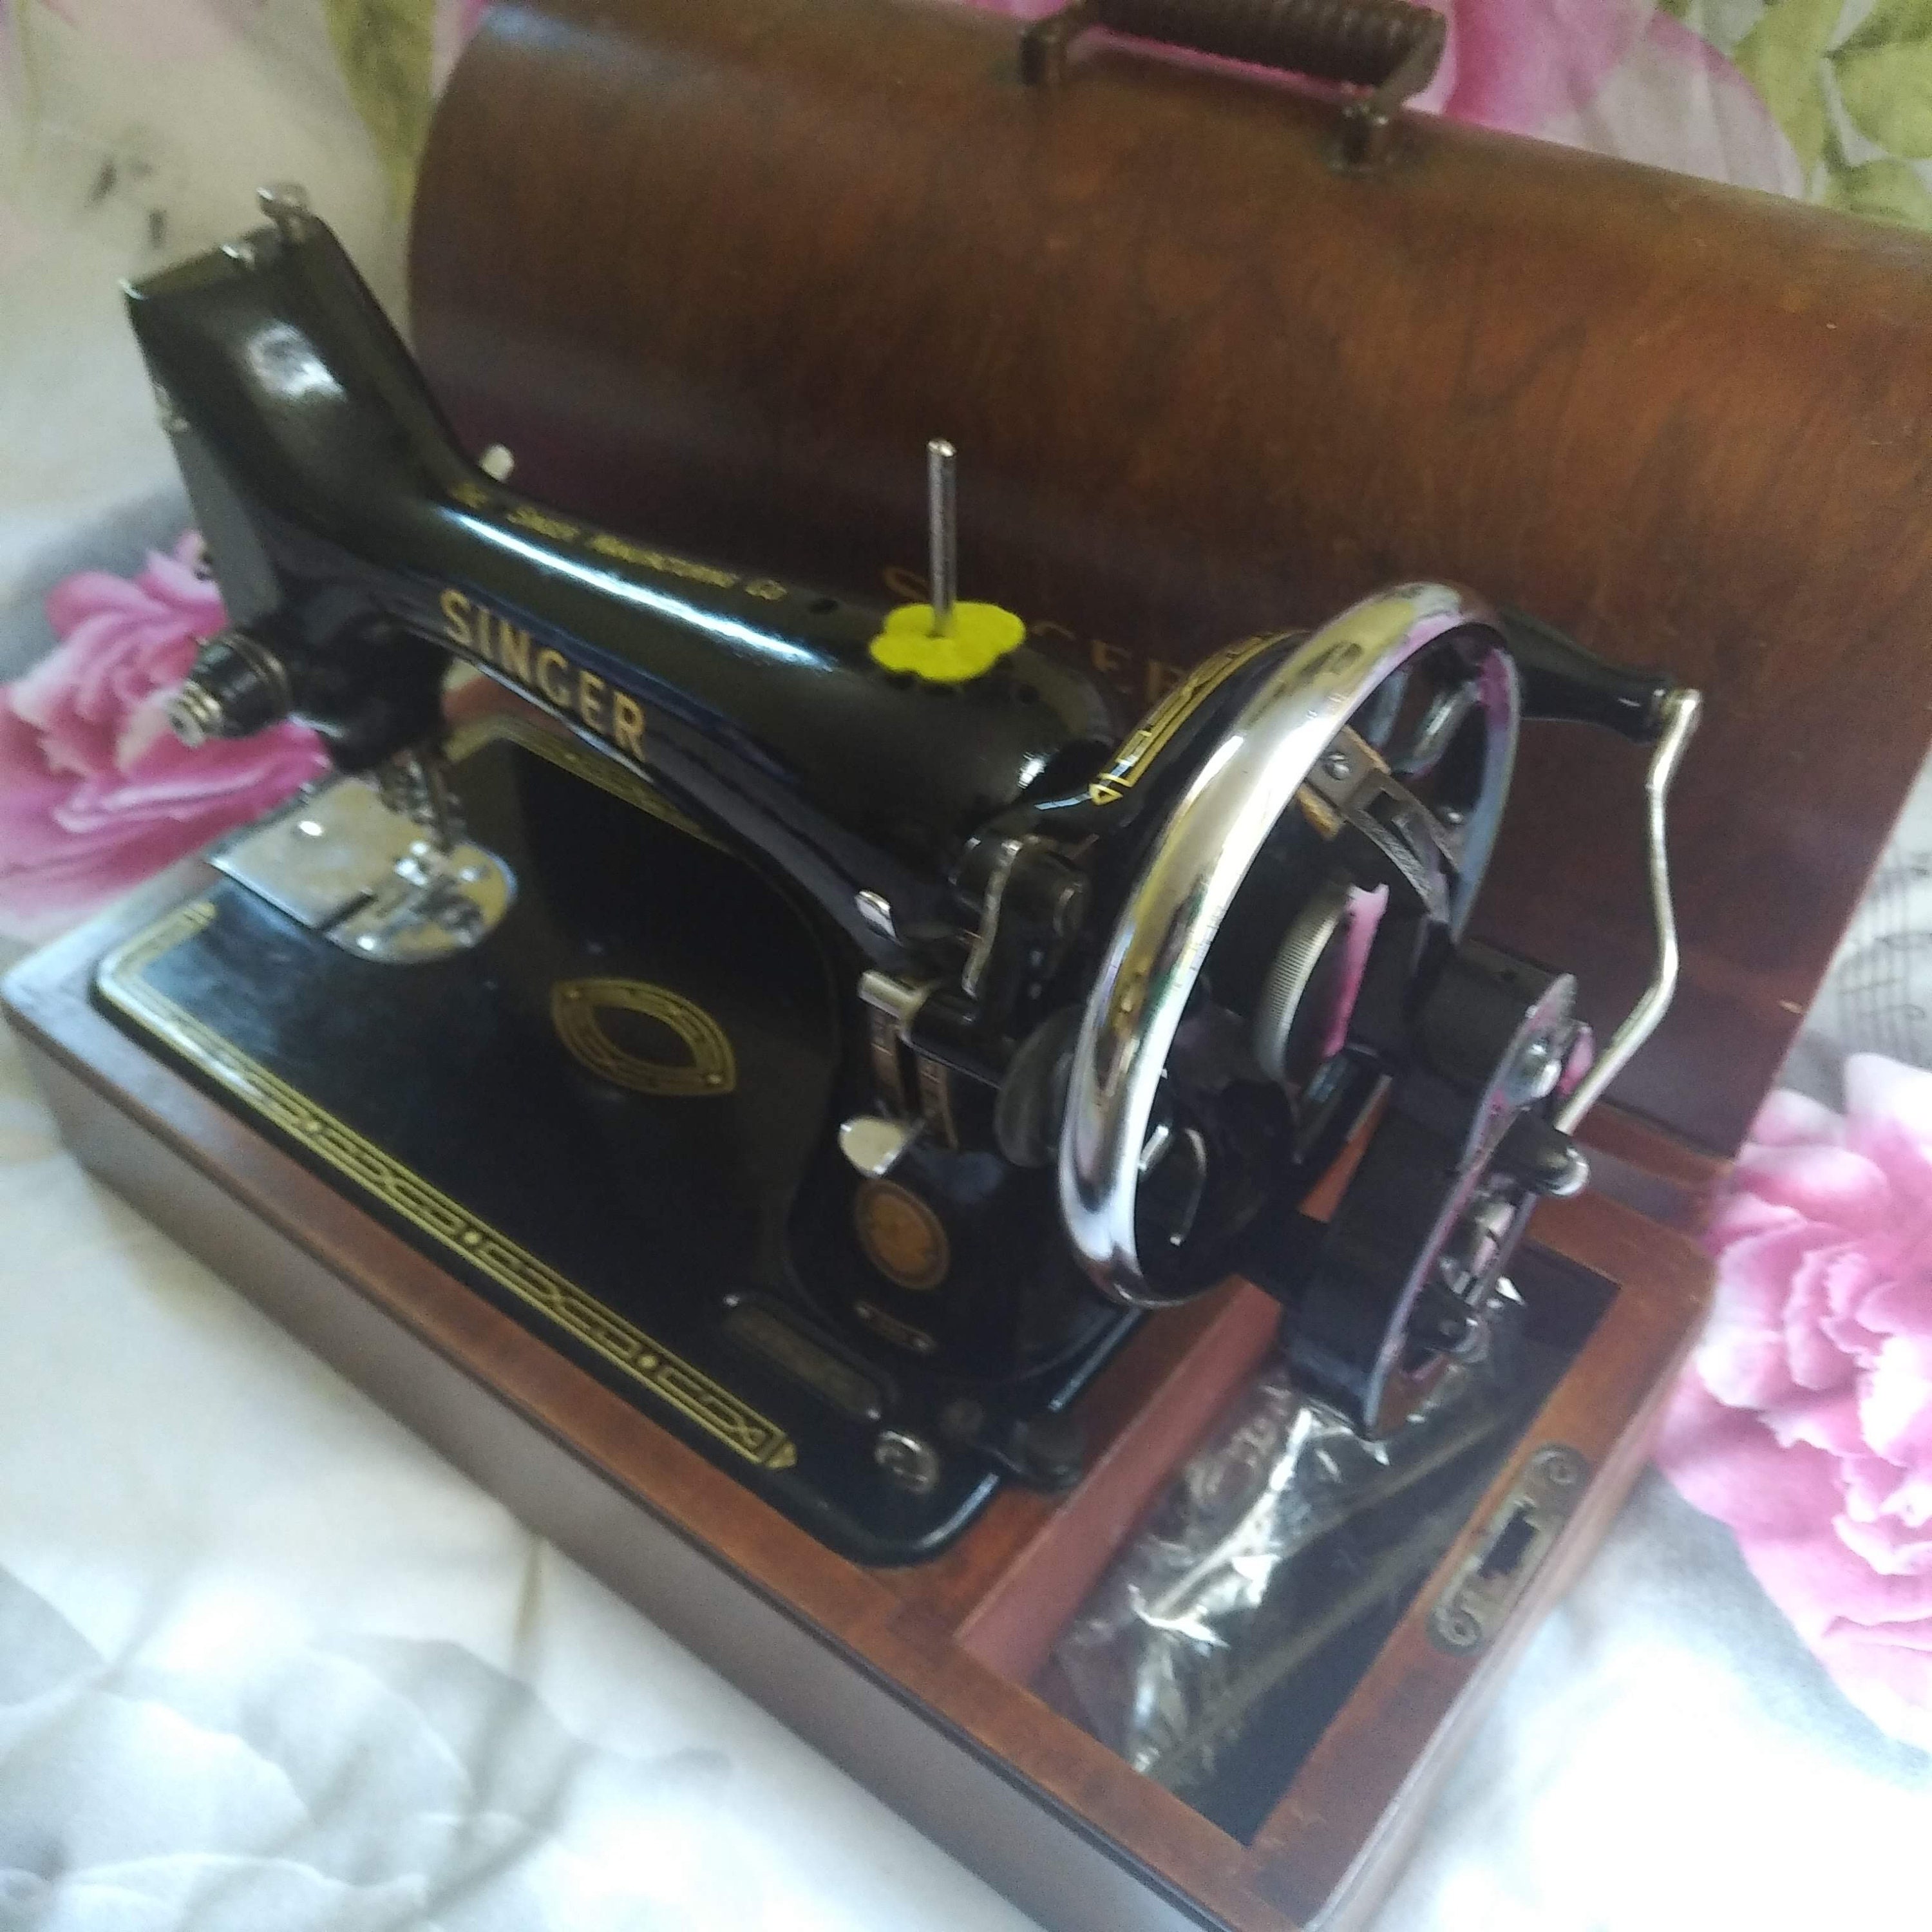 Original Bent Vintage Singer Sewing Machine in Wooden Case -  Finland